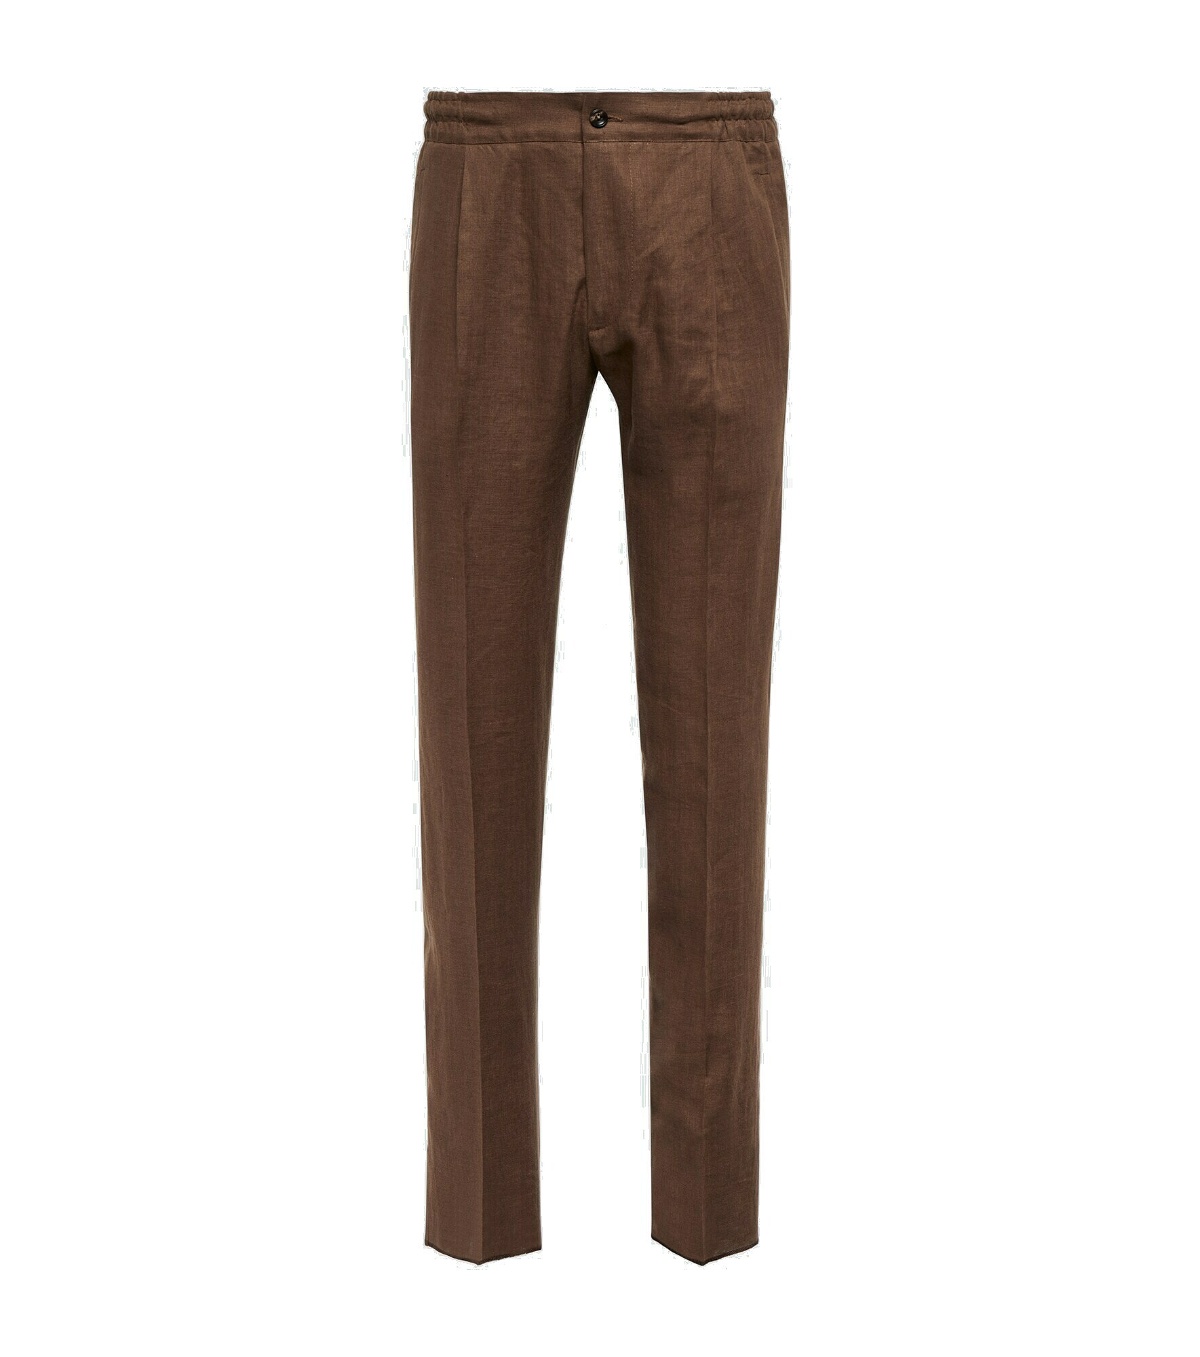 Kiton - Straight linen pants Kiton